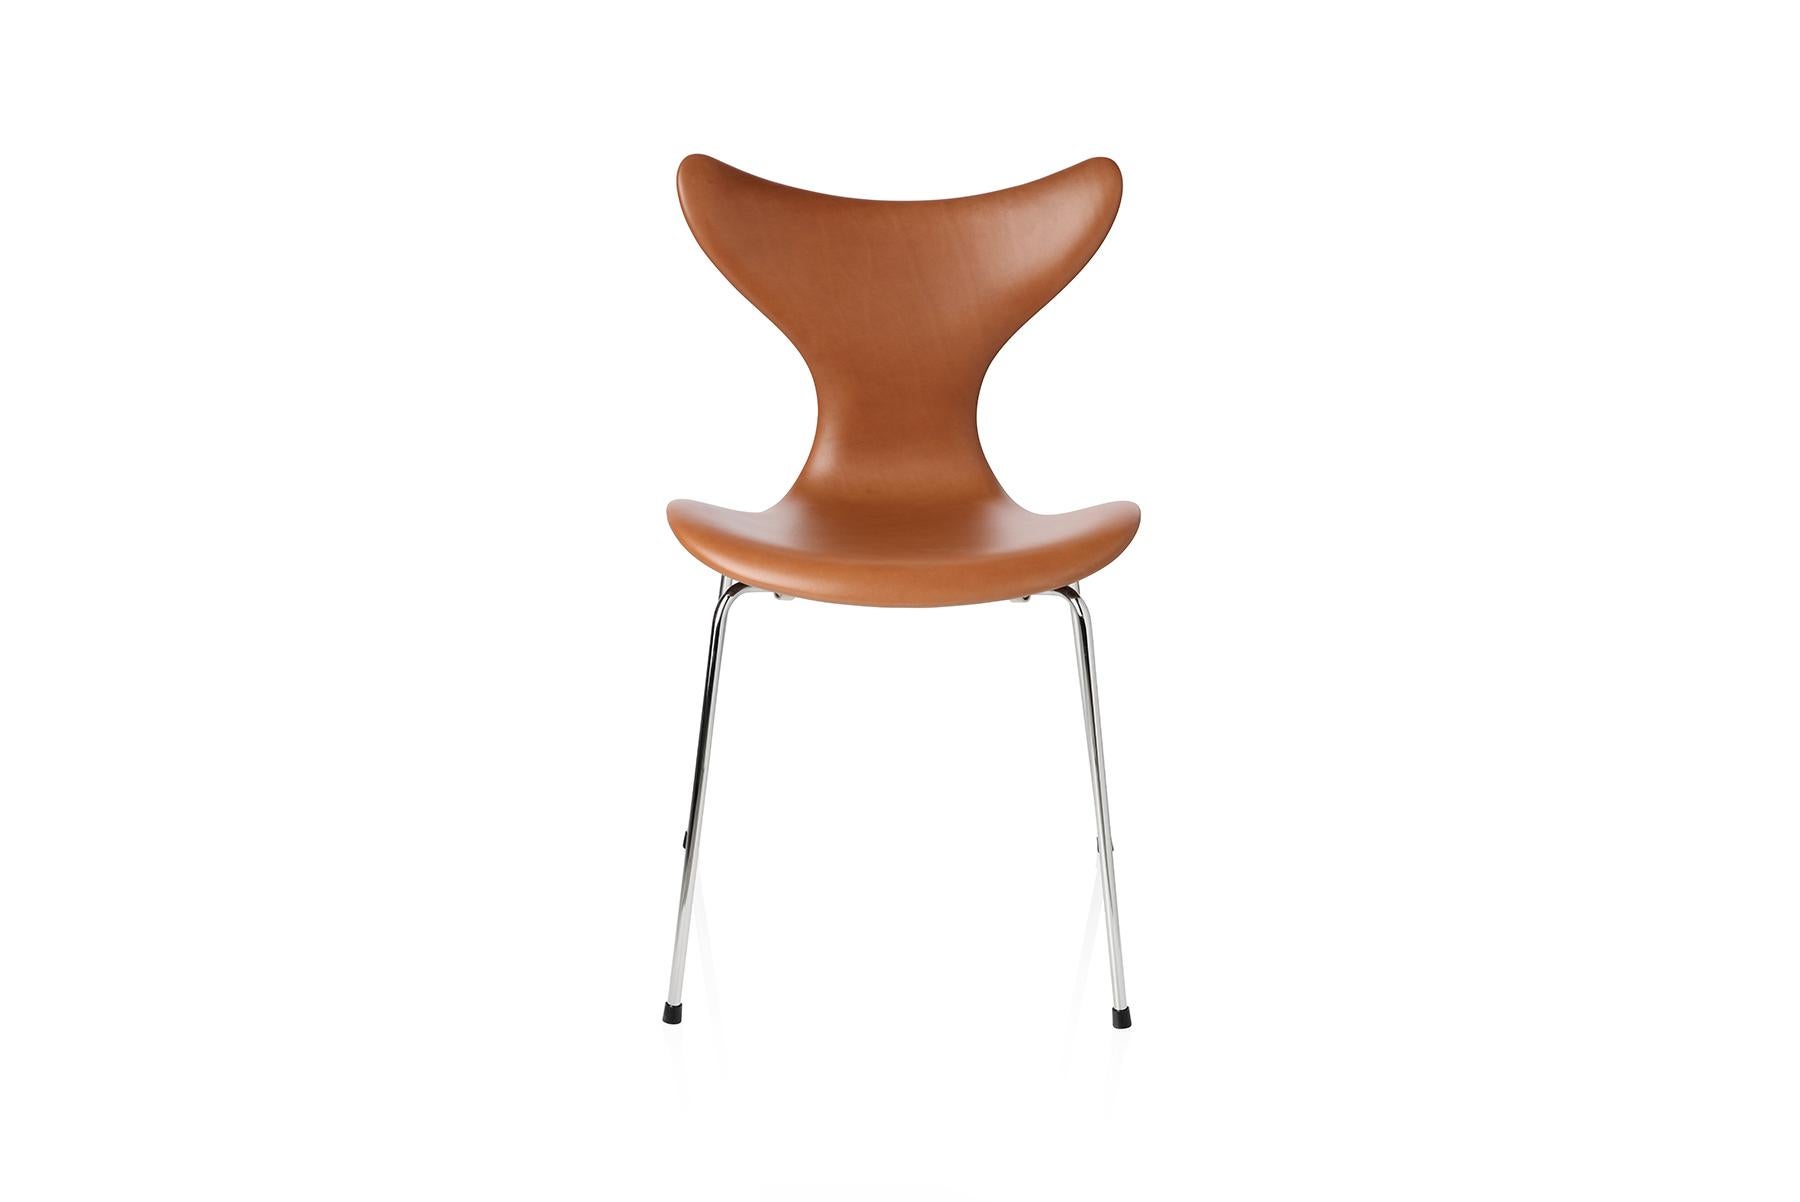 Dieser Stuhl der Serie 8 wurde ursprünglich für die Dänische Nationalbank entworfen. Sie wird oft als Lily™ bezeichnet. Das erste Modell war 3108 aus dem Jahr 1968, und auf der dänischen Möbelmesse 1970 wurde der Stuhl mit Armlehnen, Modell 3208,